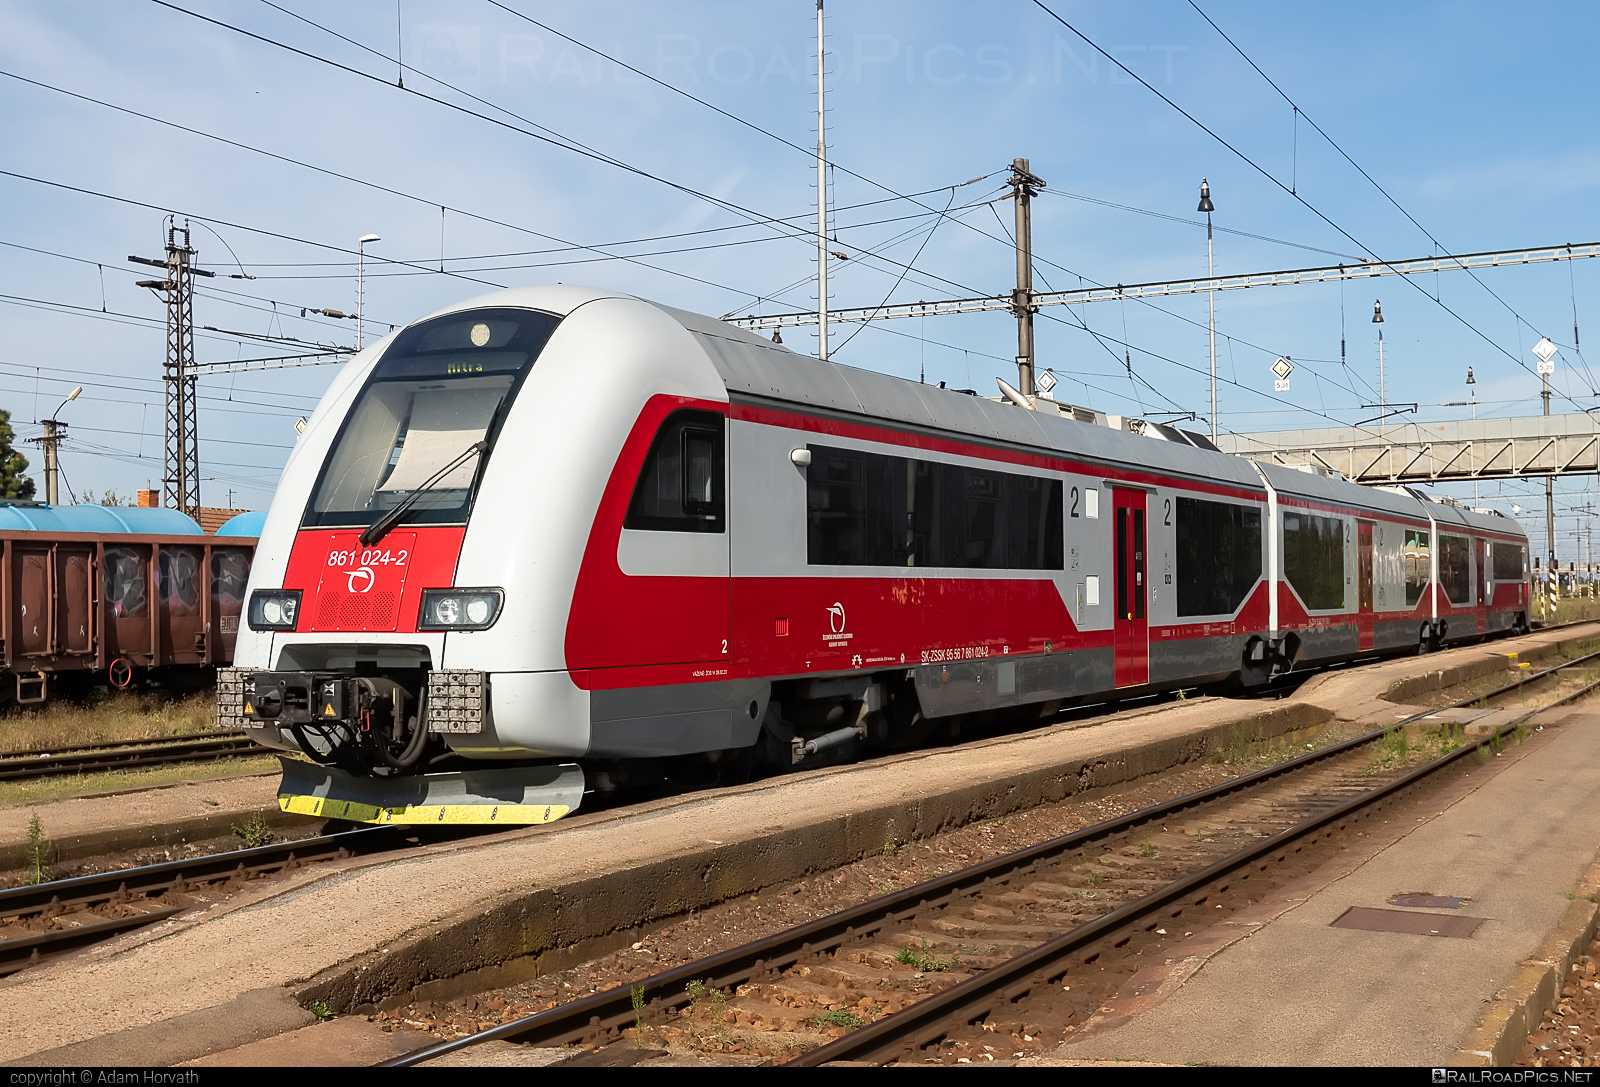 ŽOS Vrútky Class 861.0 - 861 024-2 operated by Železničná Spoločnost' Slovensko, a.s. #ZeleznicnaSpolocnostSlovensko #dunihlav #husenica #zosvrutky #zosvrutky861 #zosvrutky8610 #zssk #zssk861 #zssk8610